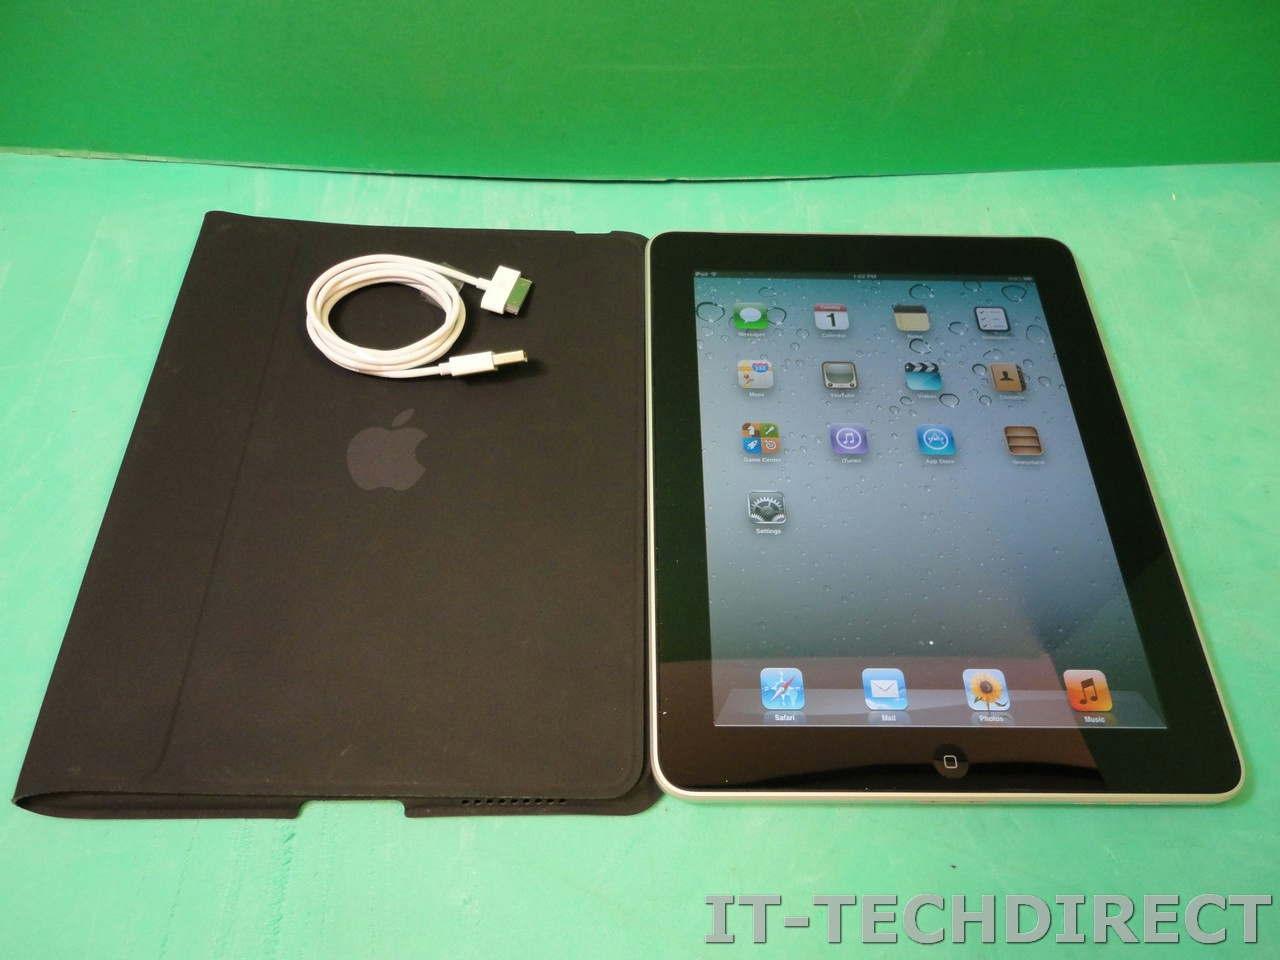 APPLE A1219 MB292LL/A 16GB iPad 1.1 (9.7in) Tablet -Wifi Bluetooth